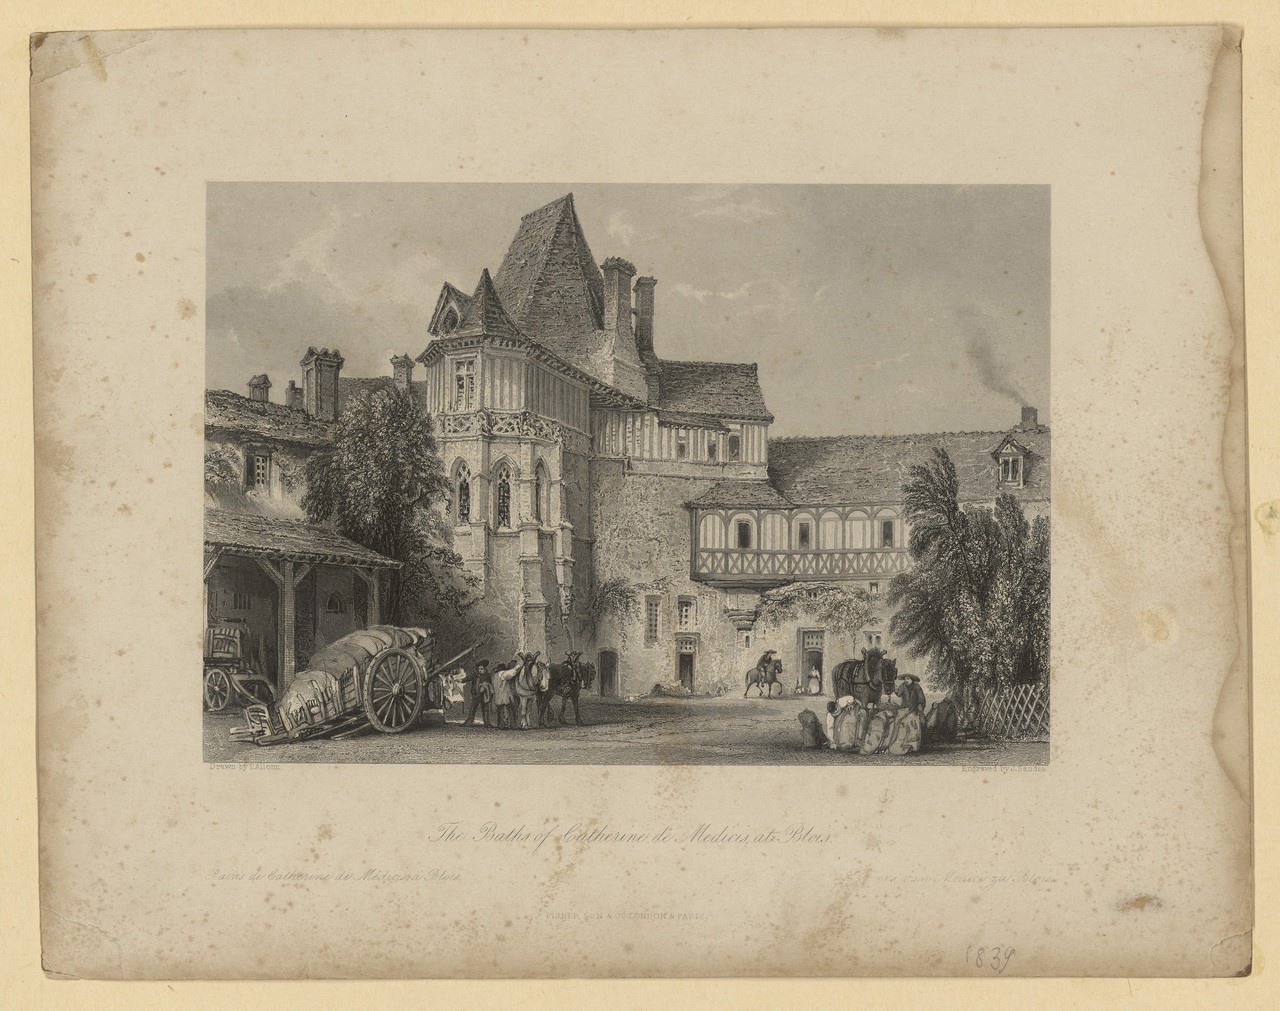 Thomas Allom, Le pavillon Anne de Bretagne à Blois, gravure vers 1840